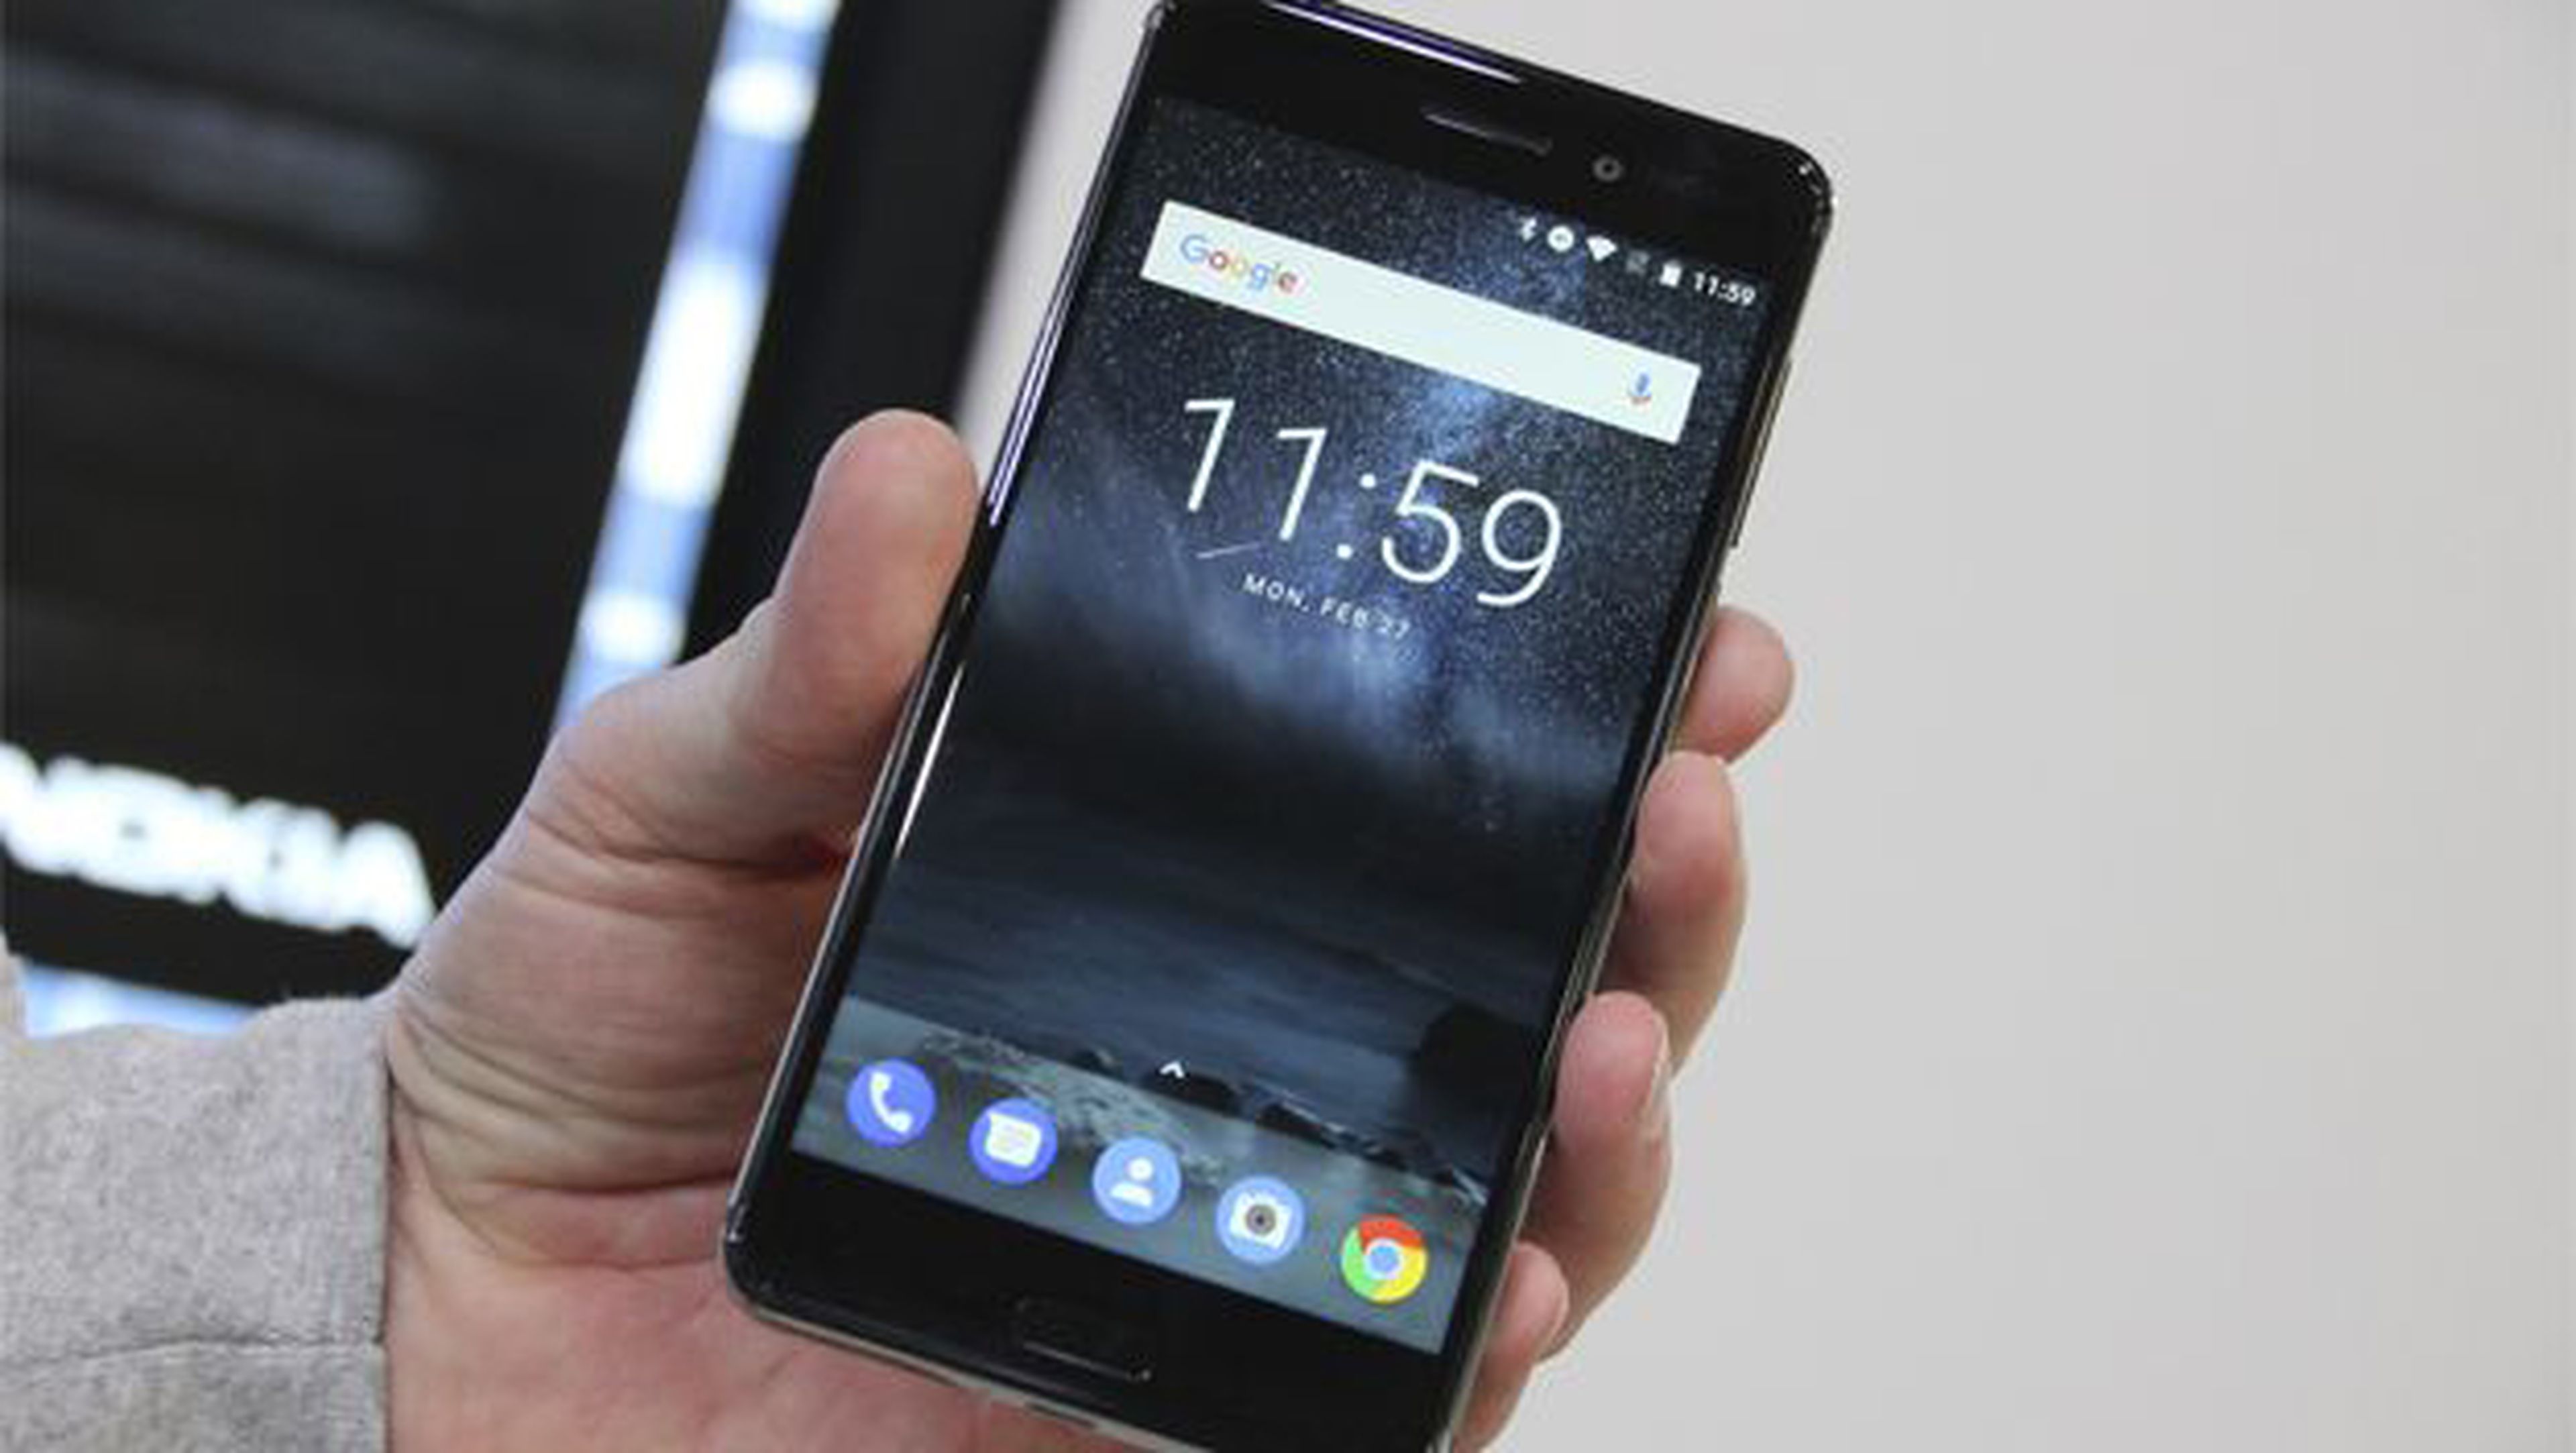 Nokia 9, empiezan los rumores sobre su lanzamiento